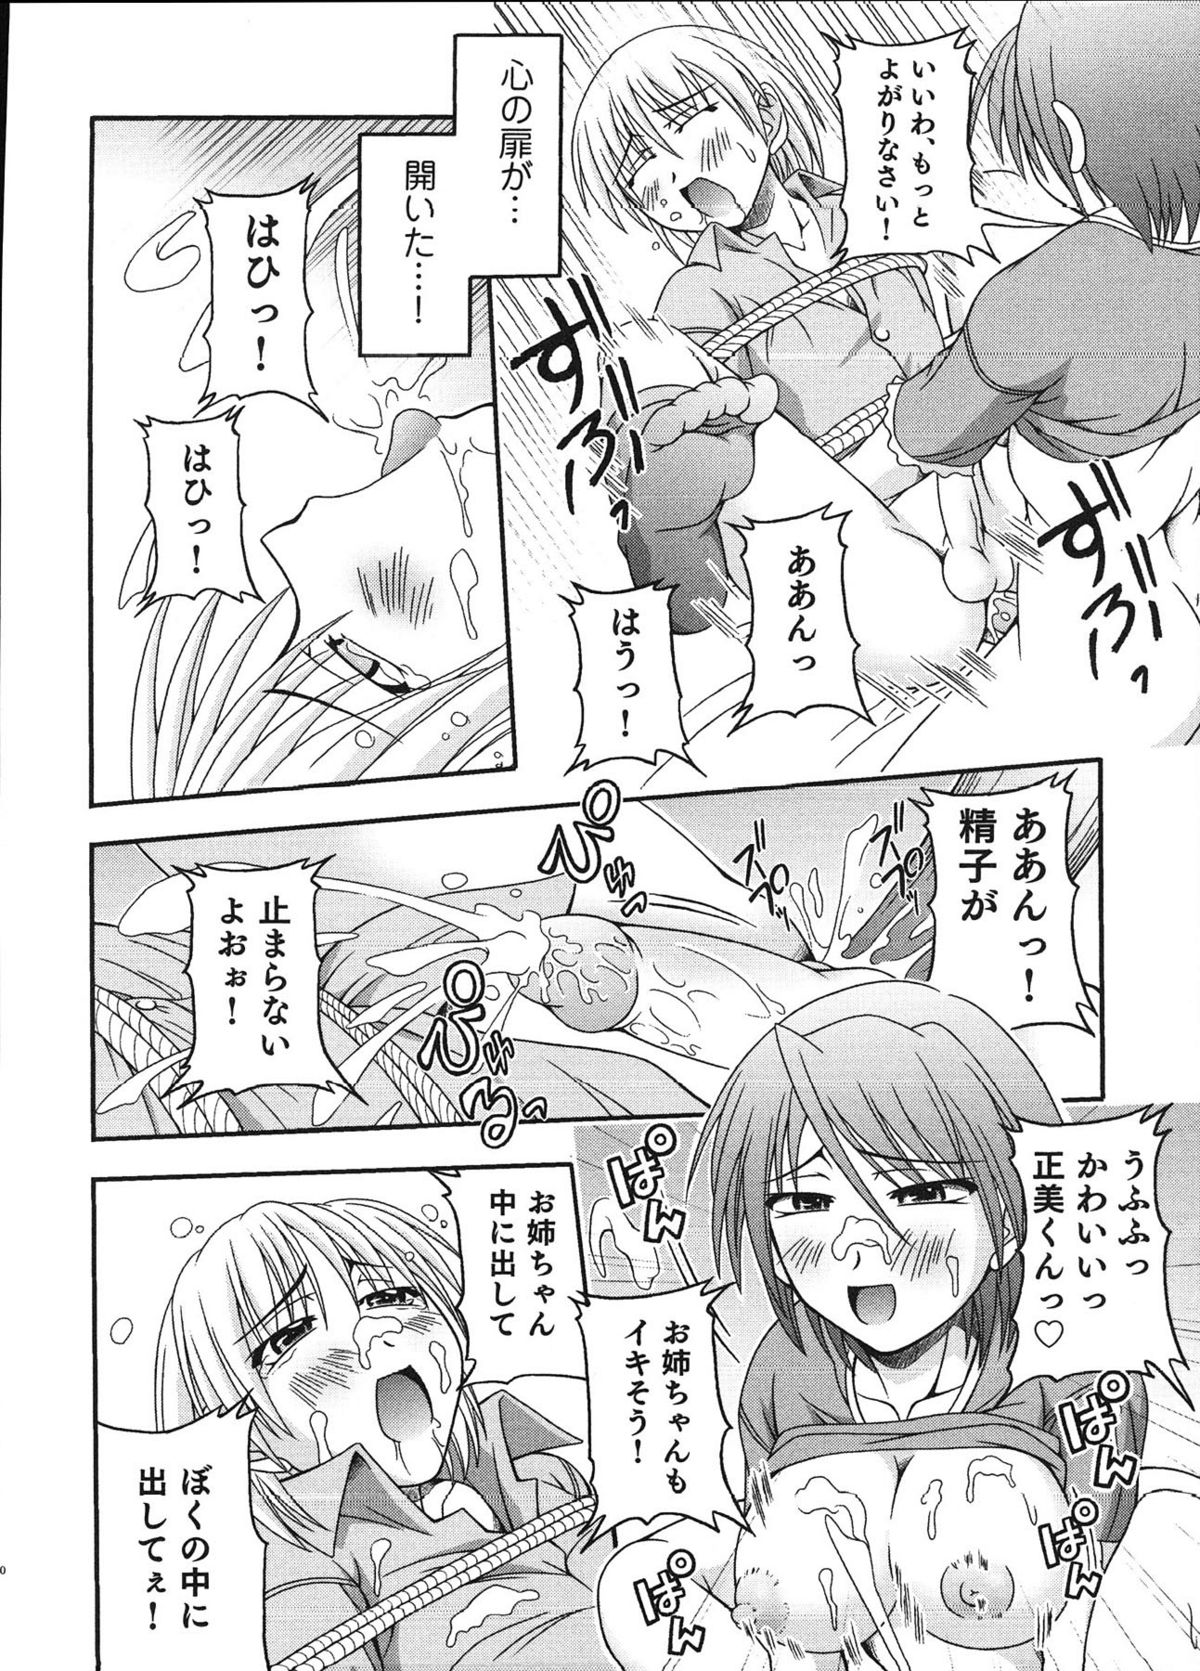 [Anthology] Ero Shota 12 - Sweet Maple Boys page 49 full